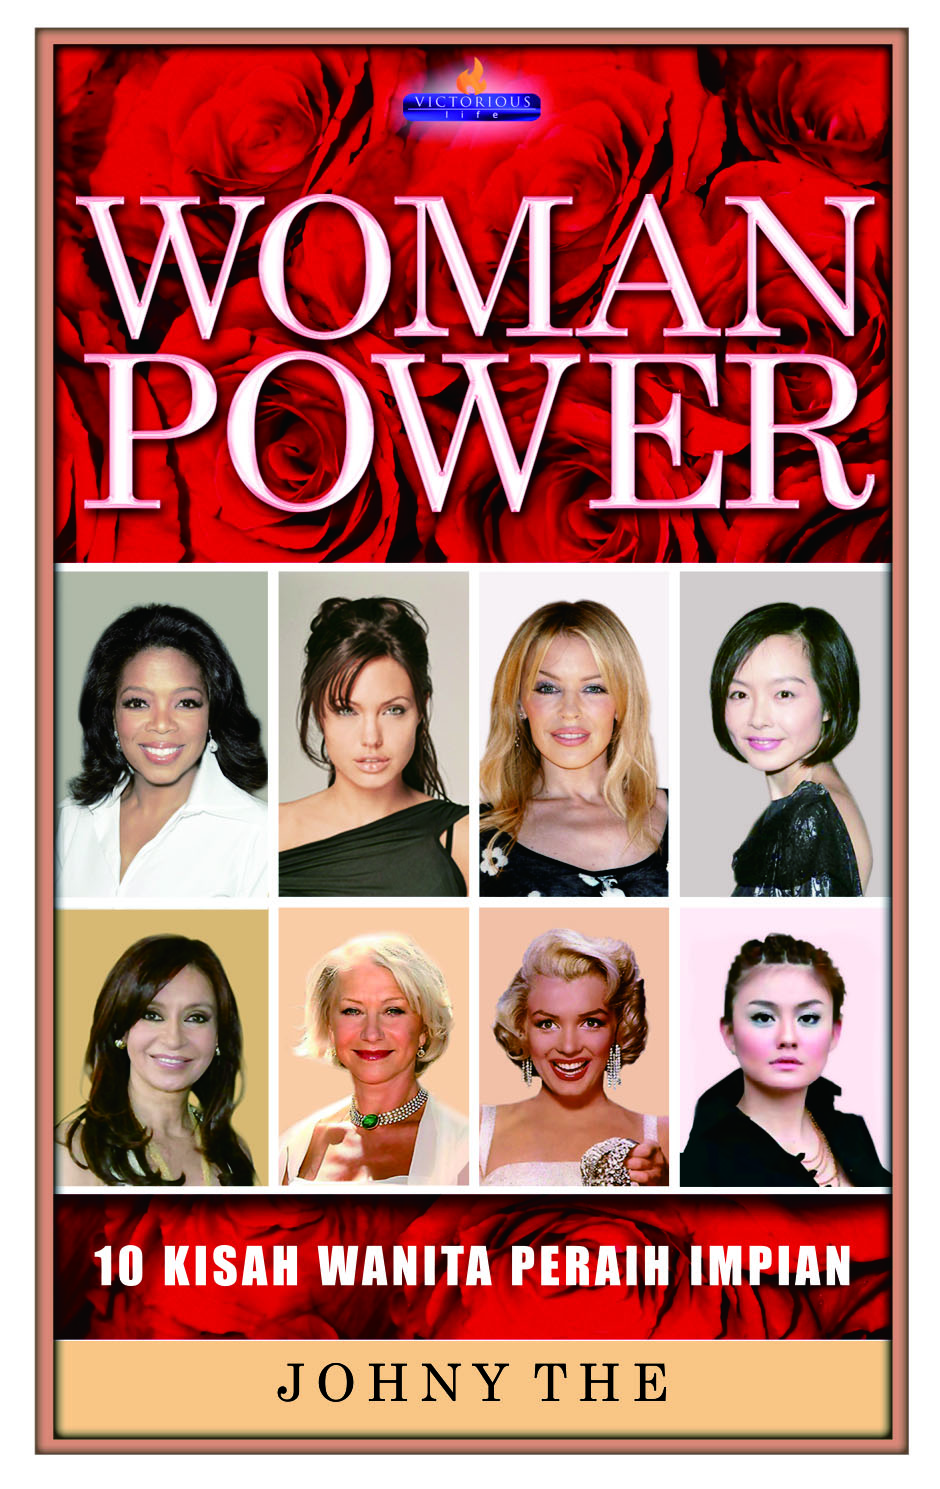 Woman power,10 kisah wanita peraih impian [sumber elektronis]